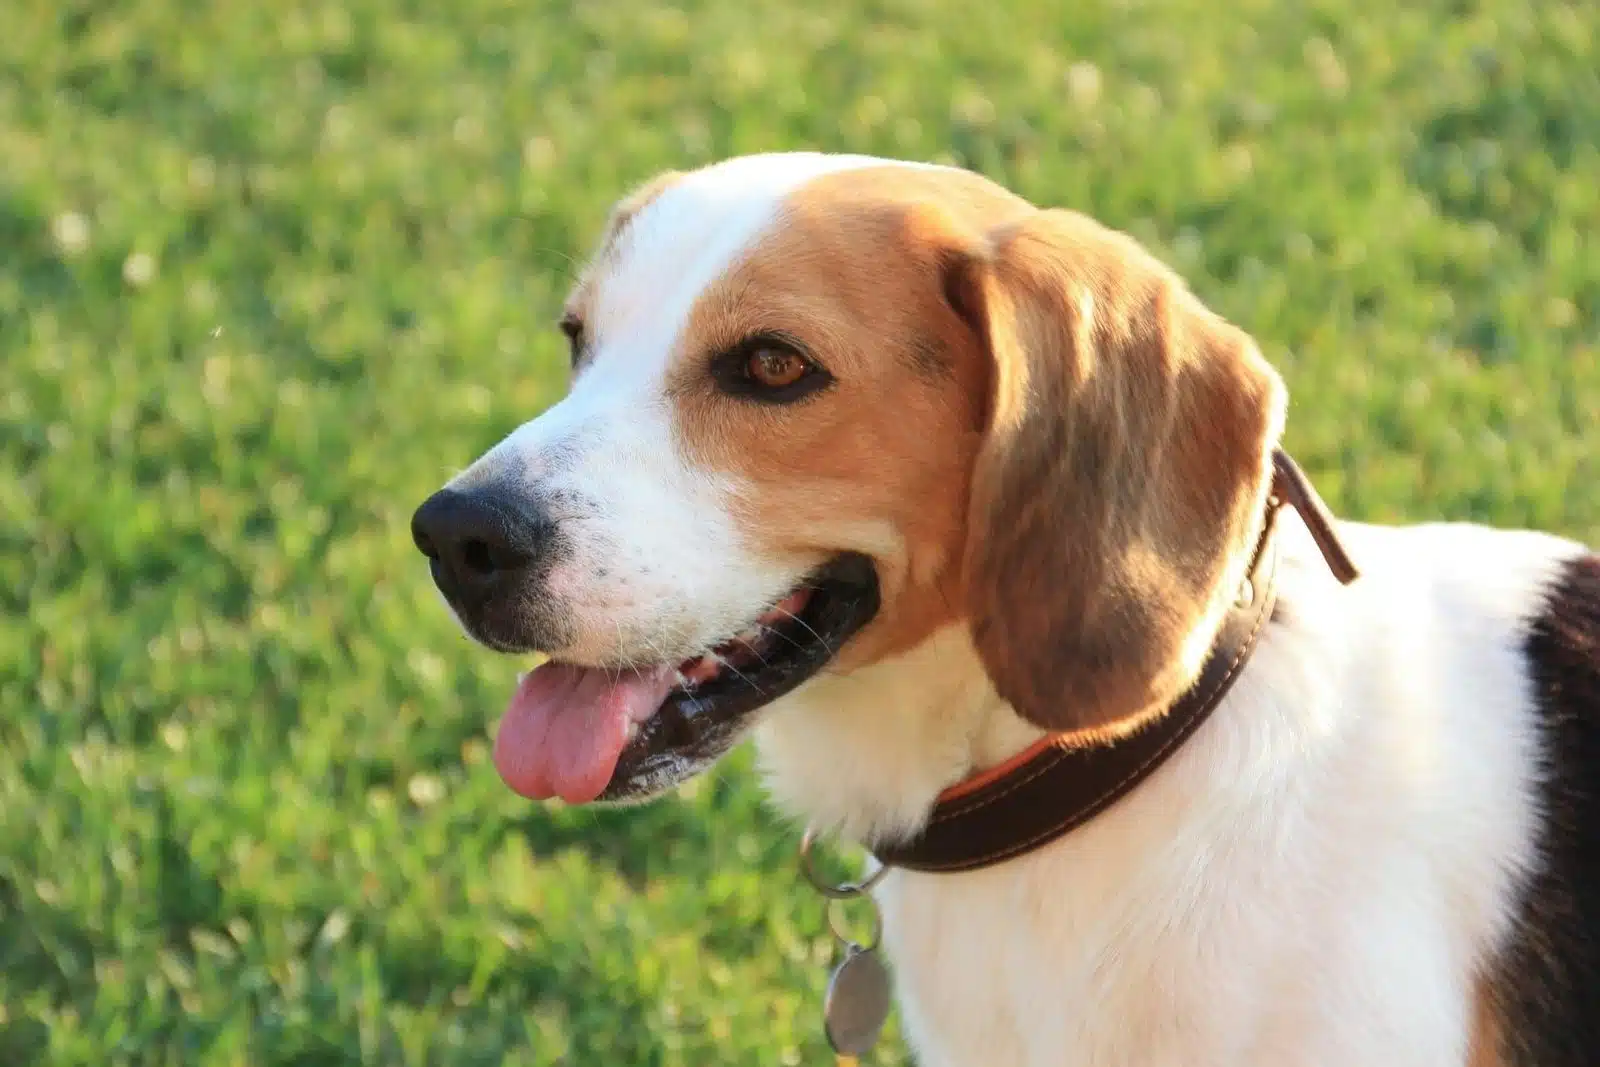 Conseils pour l'achat d'un Beagle : Ce qu'il faut savoir avant l'adoption